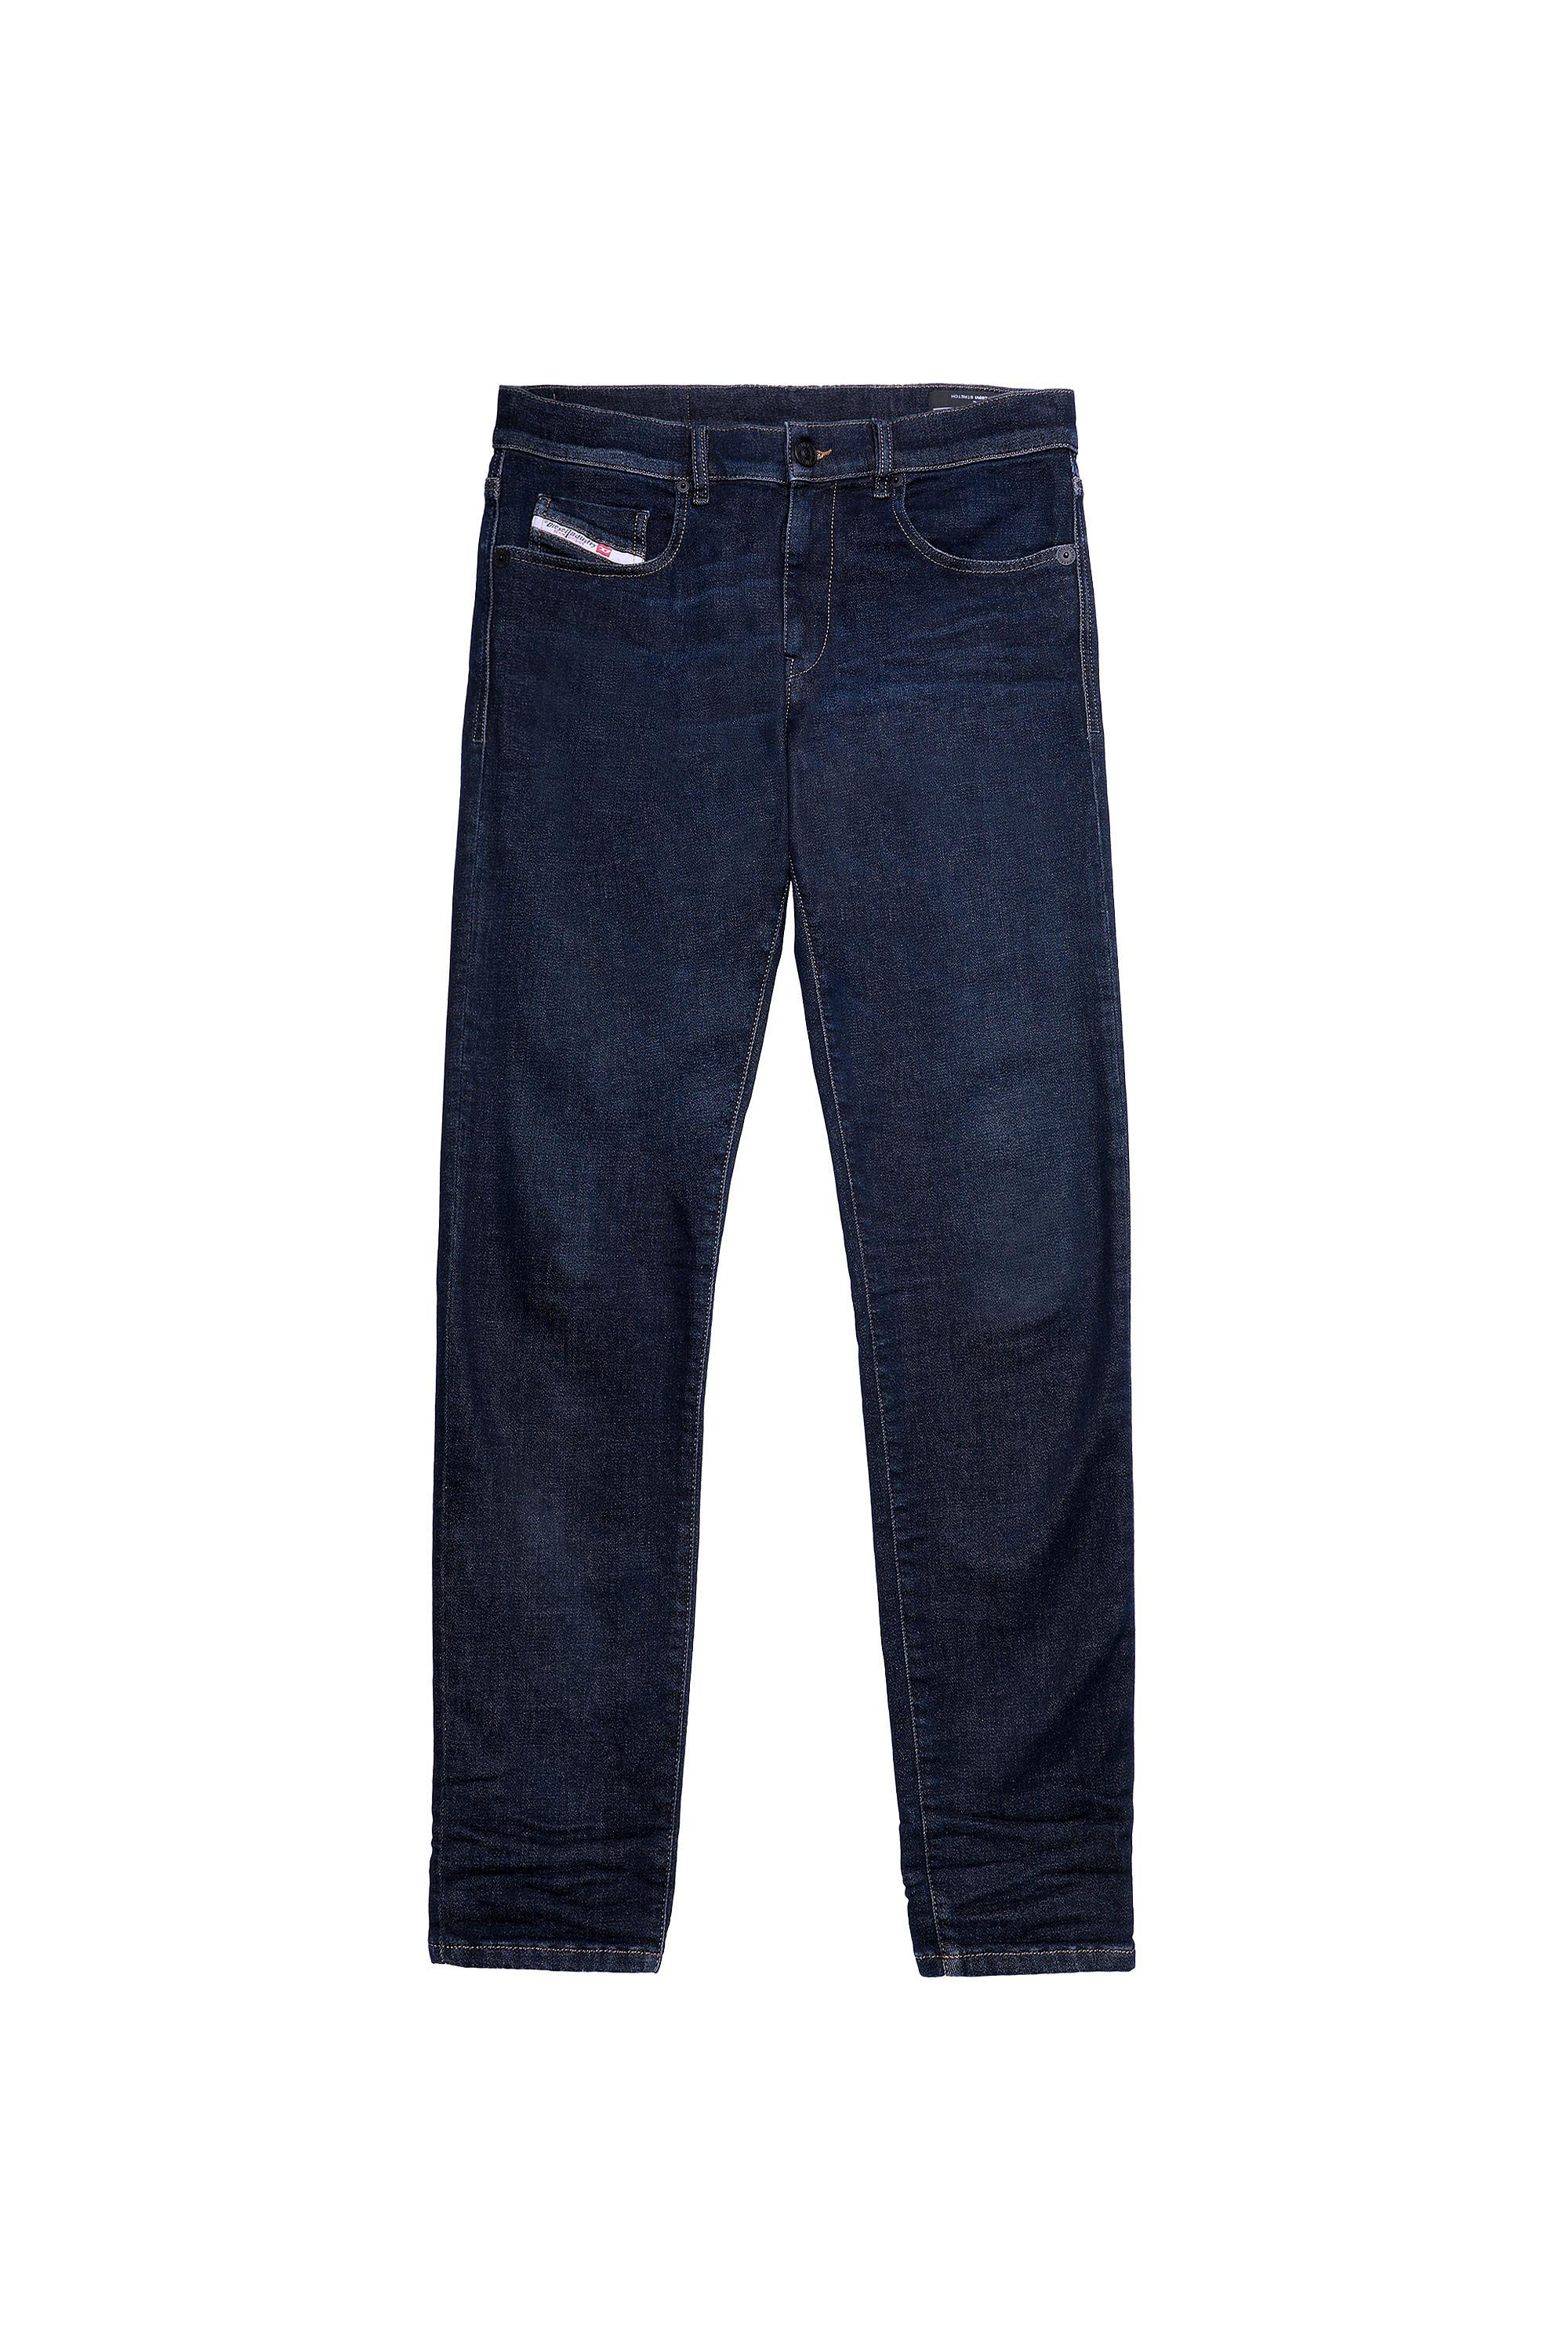 Diesel - D-Strukt Slim JoggJeans® Z69VI, Dark Blue - Image 2